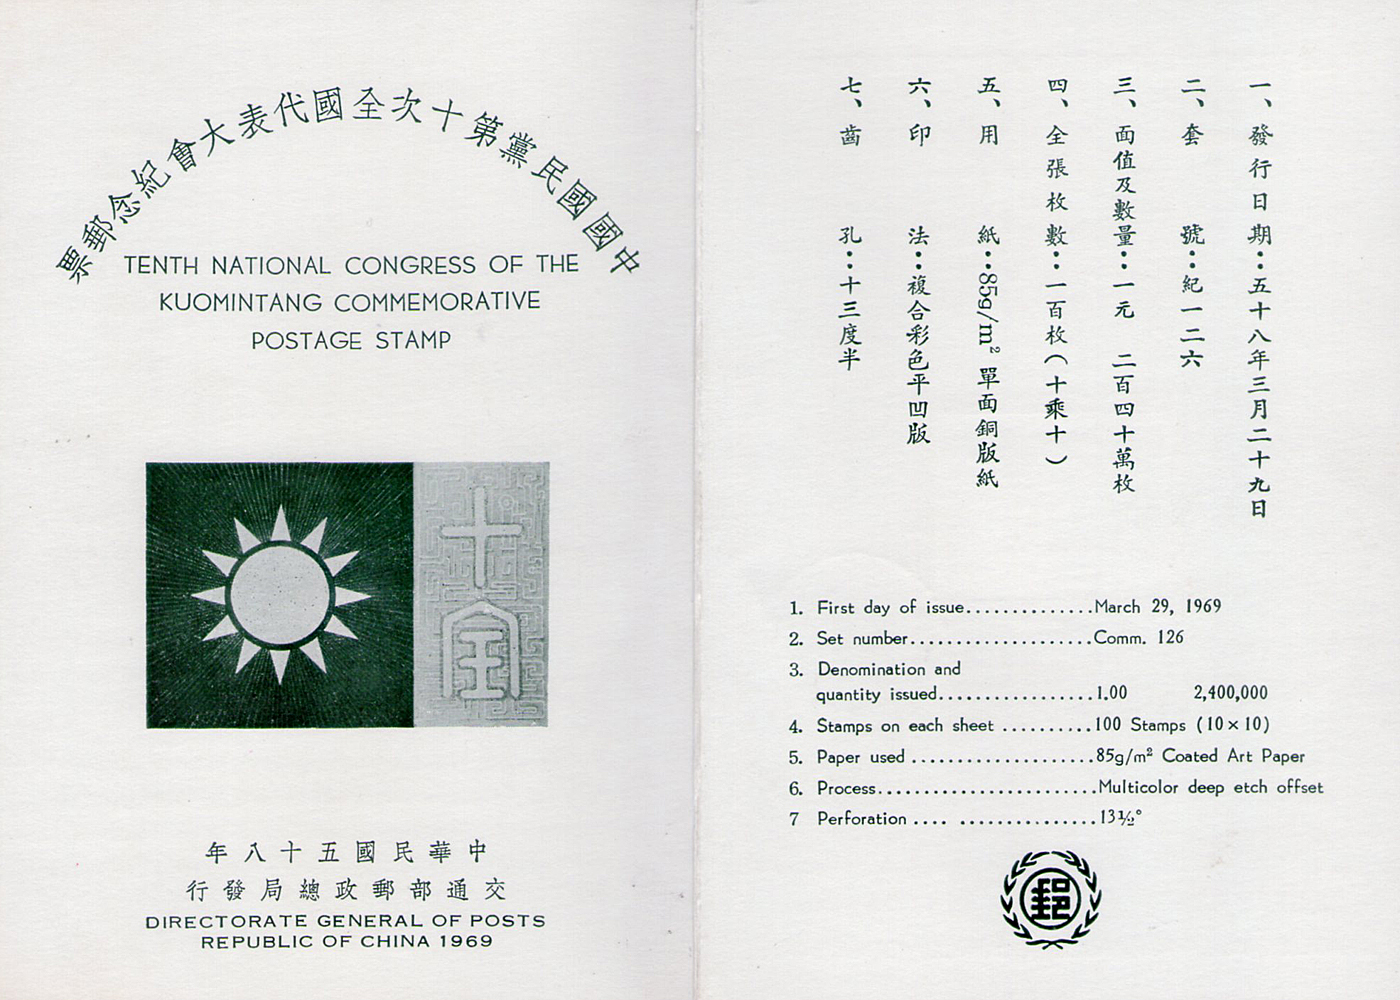 中國國民黨第十次全國代表大會紀念郵票